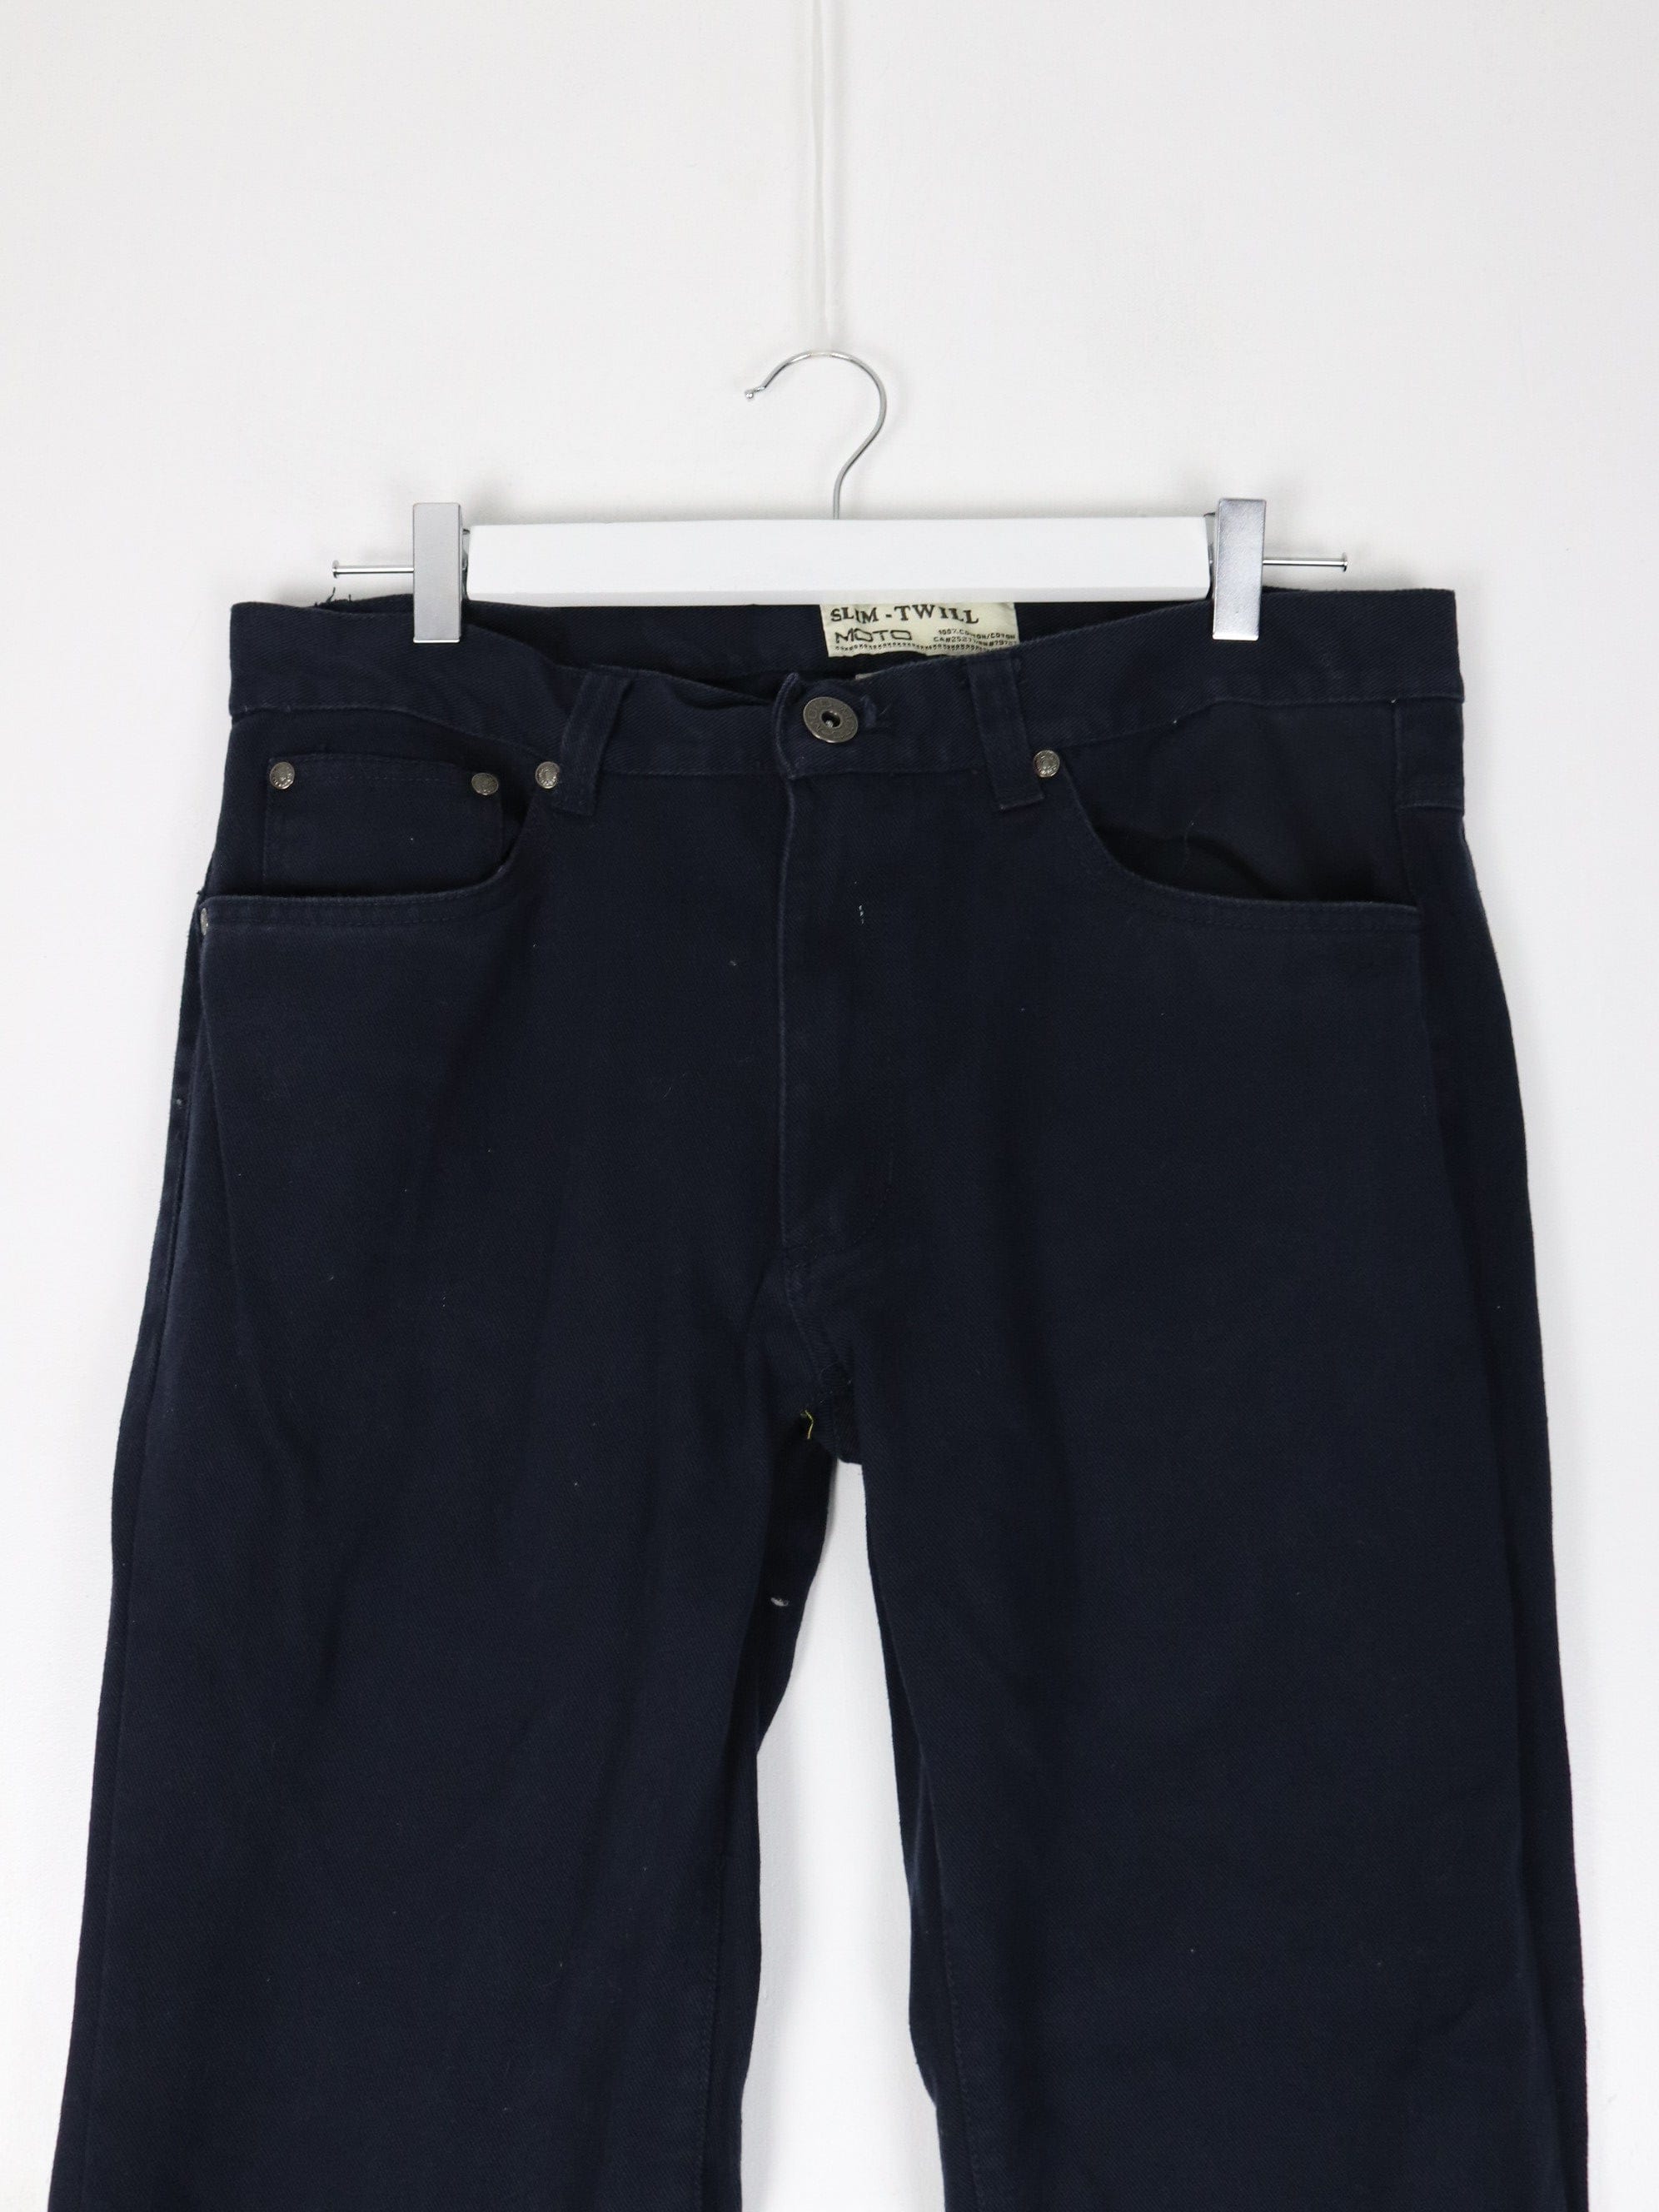 34 x 34 Pants & Jeans for Men